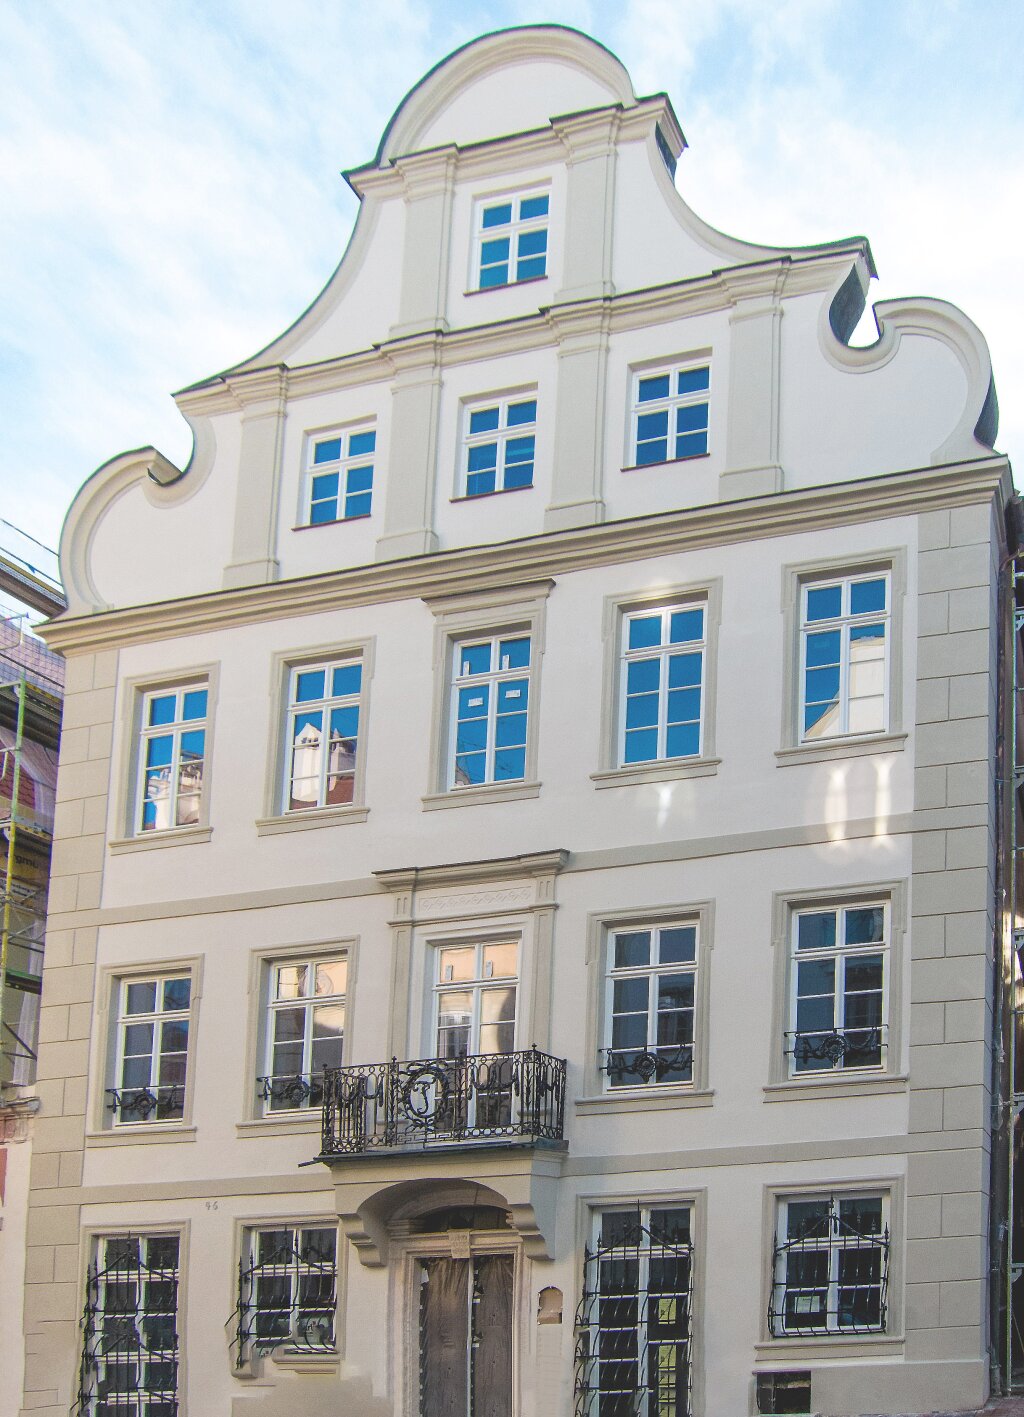 Bild von Vorne des Gebäudes in der Amalienstraße.